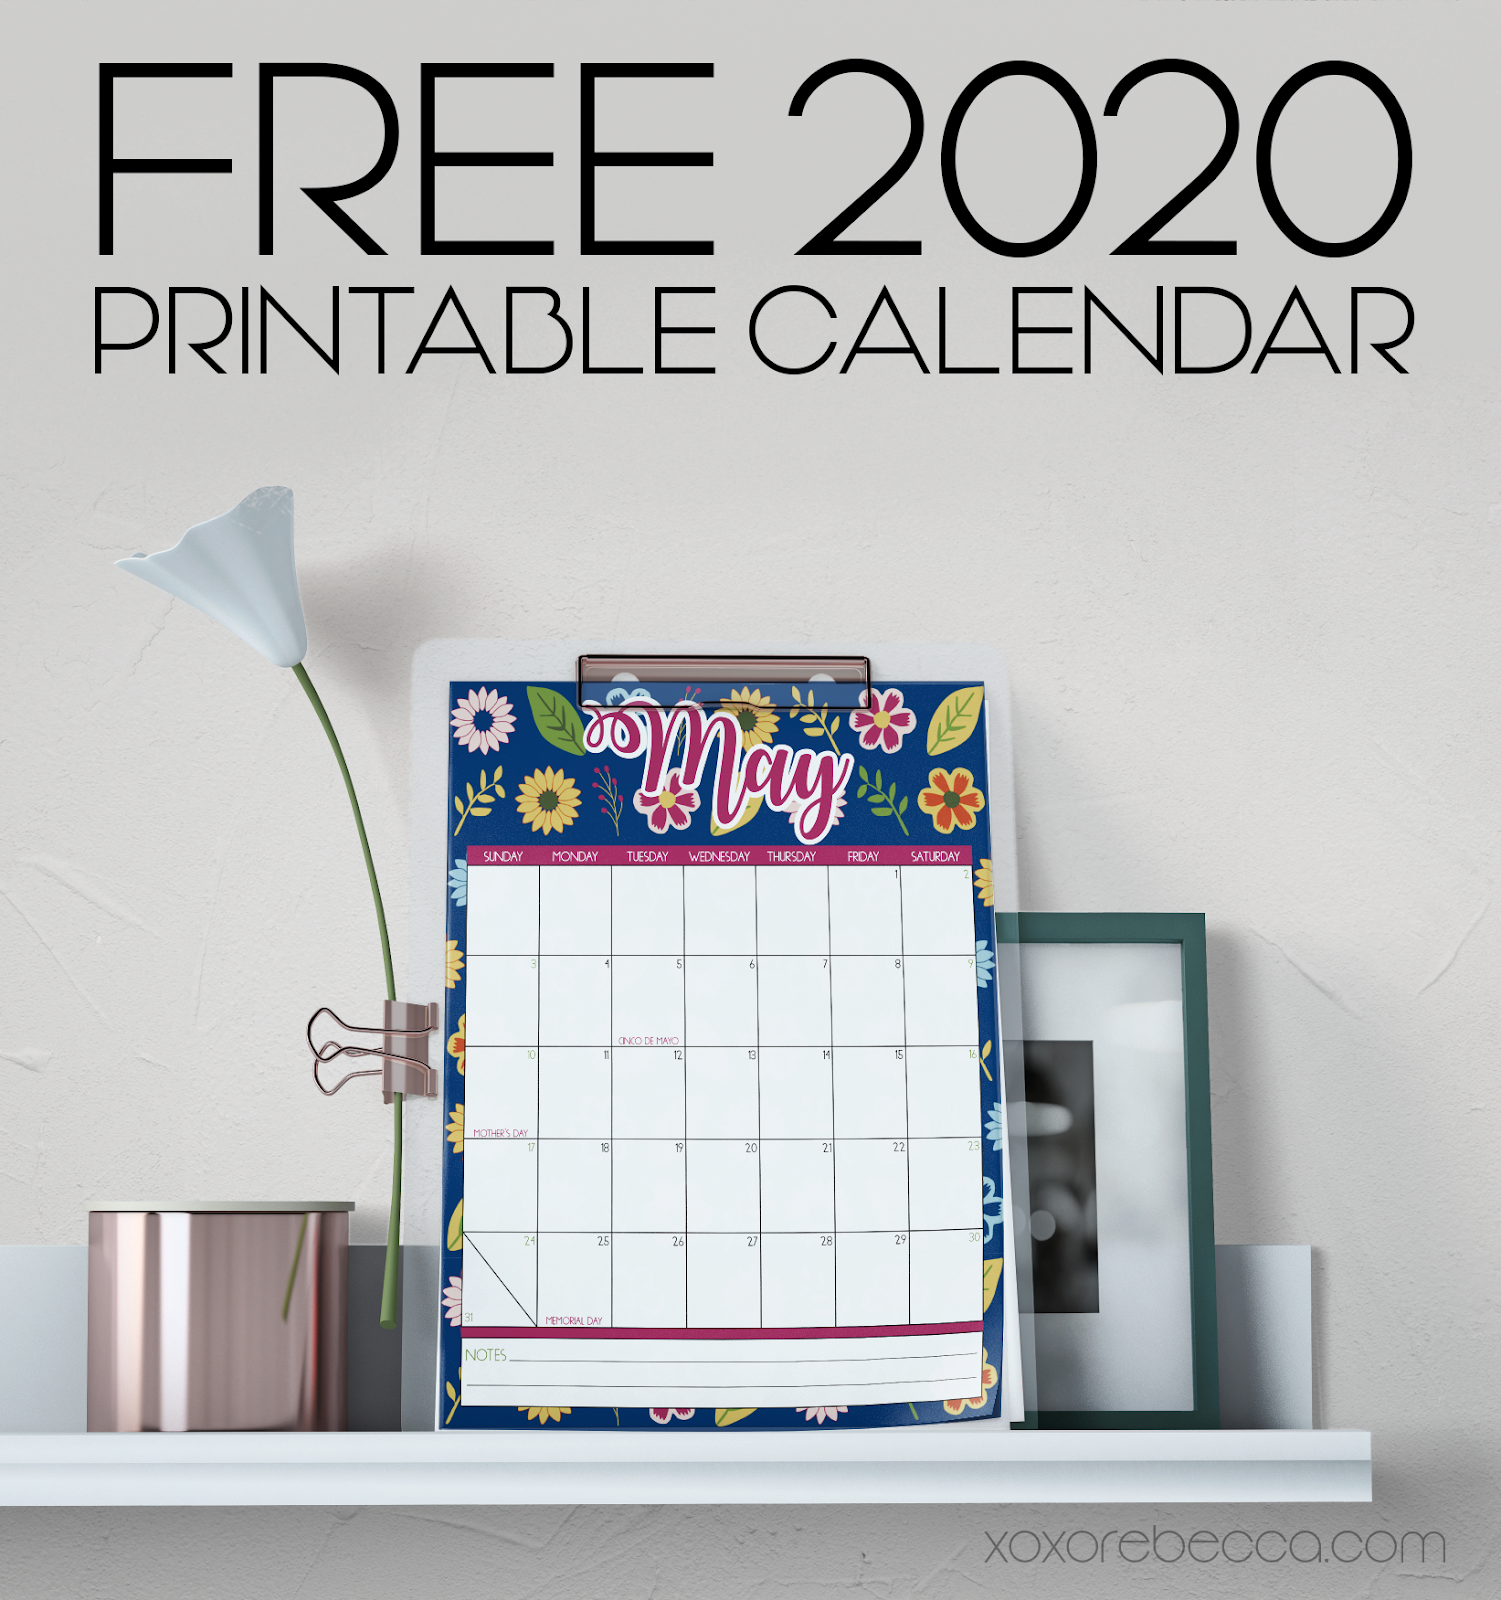 Free Printable 2020 Calendar from xoxo Rebecca